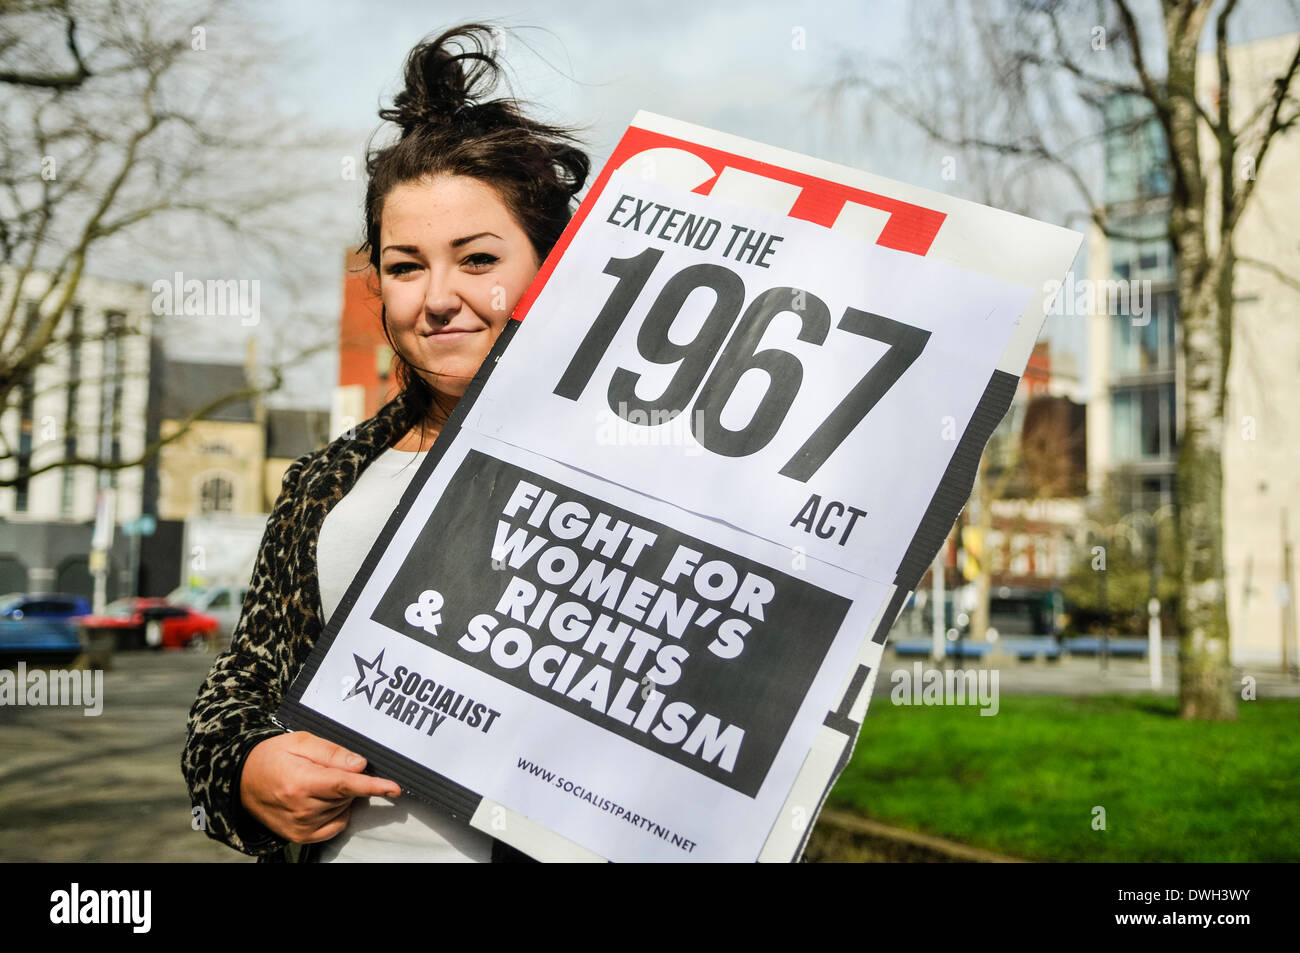 Belfast, Nordirland. 8. März 2014 - eine Frau hält ein Plakat sagen "Extend 1967 [Abtreibung] handeln [Nordirland]" zu Beginn des International Women es Day Parade Credit: Stephen Barnes/Alamy Live News Stockfoto